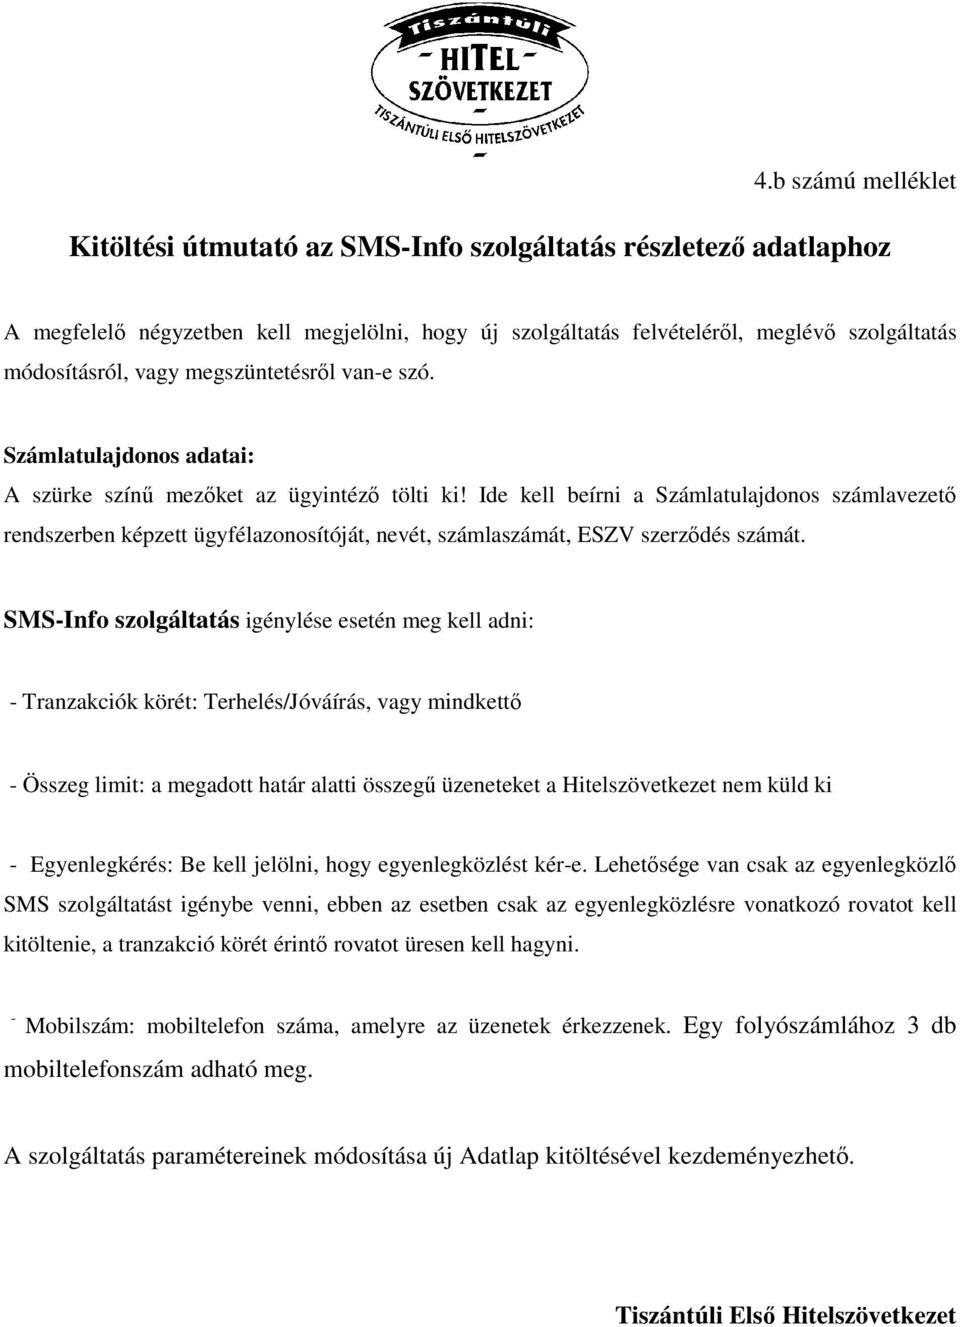 Ide kell beírni a Számlatulajdonos számlavezetı rendszerben képzett ügyfélazonosítóját, nevét, számlaszámát, ESZV szerzıdés számát.